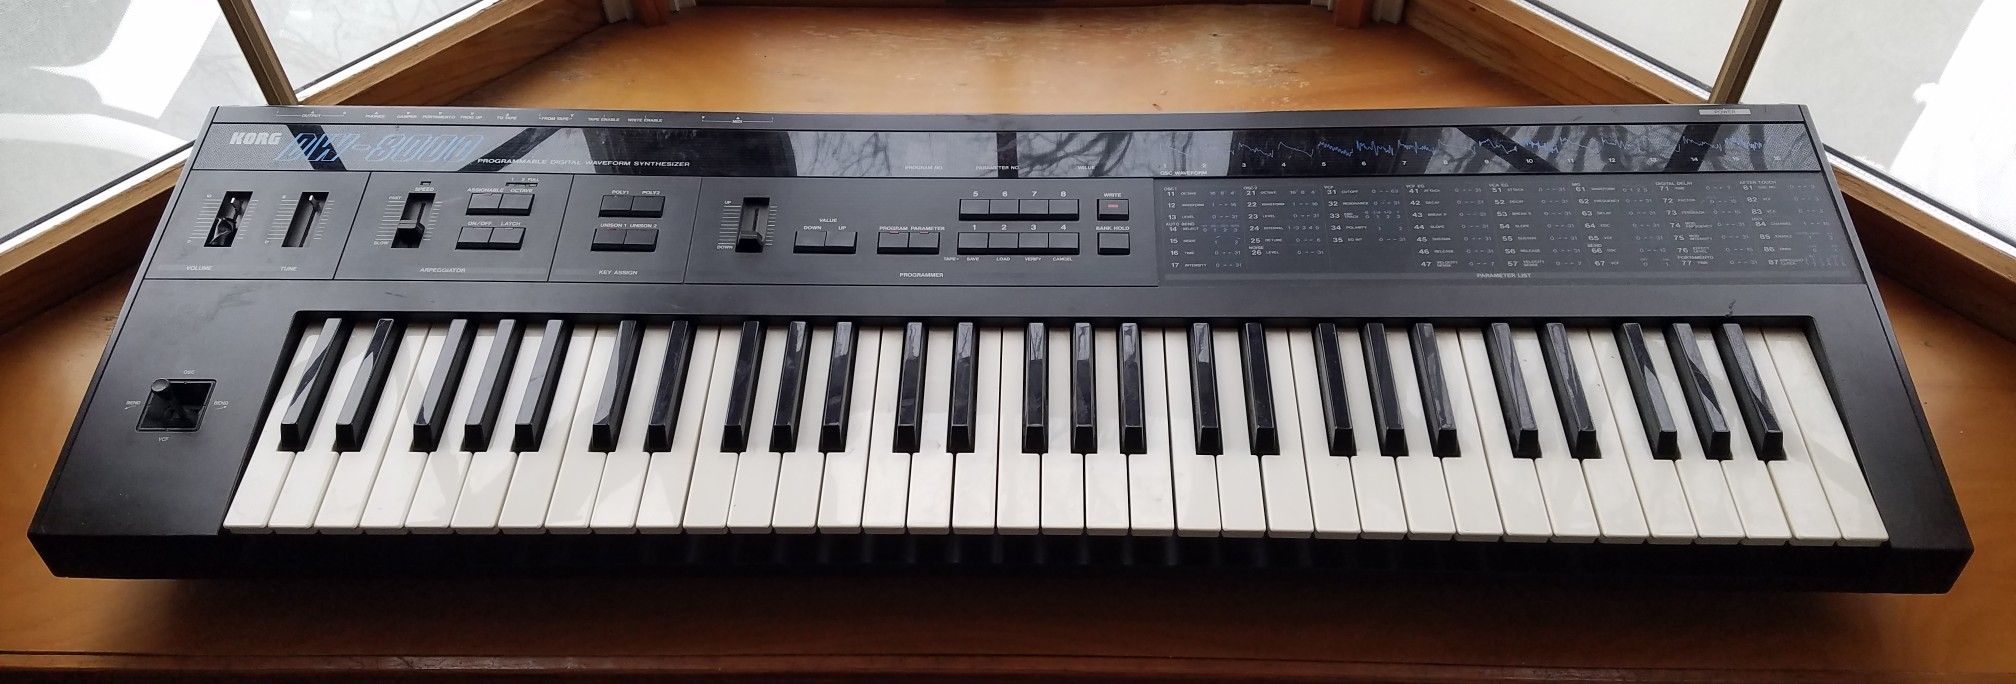 Korg Keyboard DW-8000